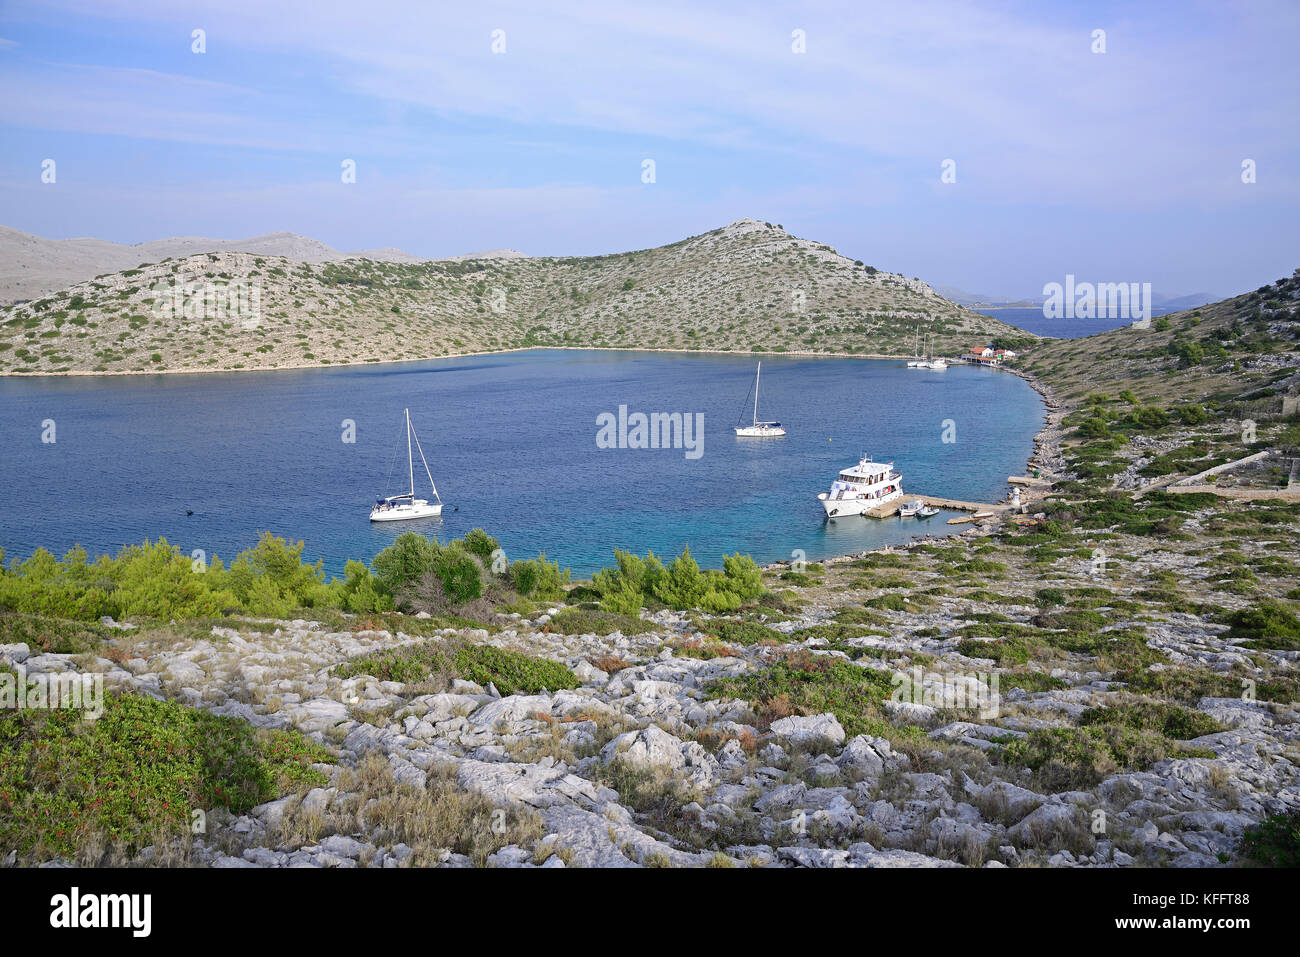 Natürlicher Hafen auf der unbewohnten Insel lebrnaka, Nationalpark Kornati Inseln, Adria, Mittelmeer, Dalmatien, Kroatien Stockfoto